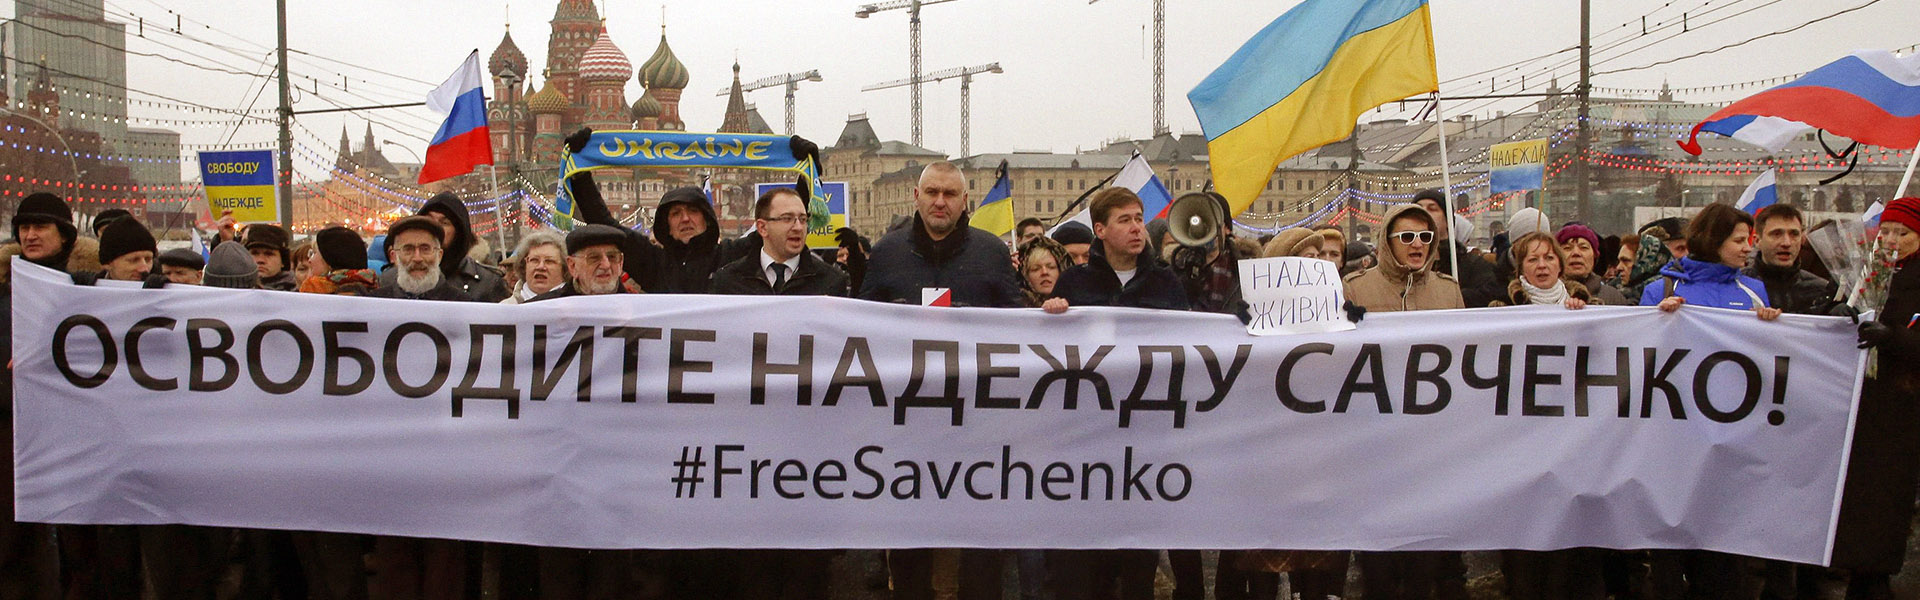 Военные и политика: на освобождение Надежды Савченко